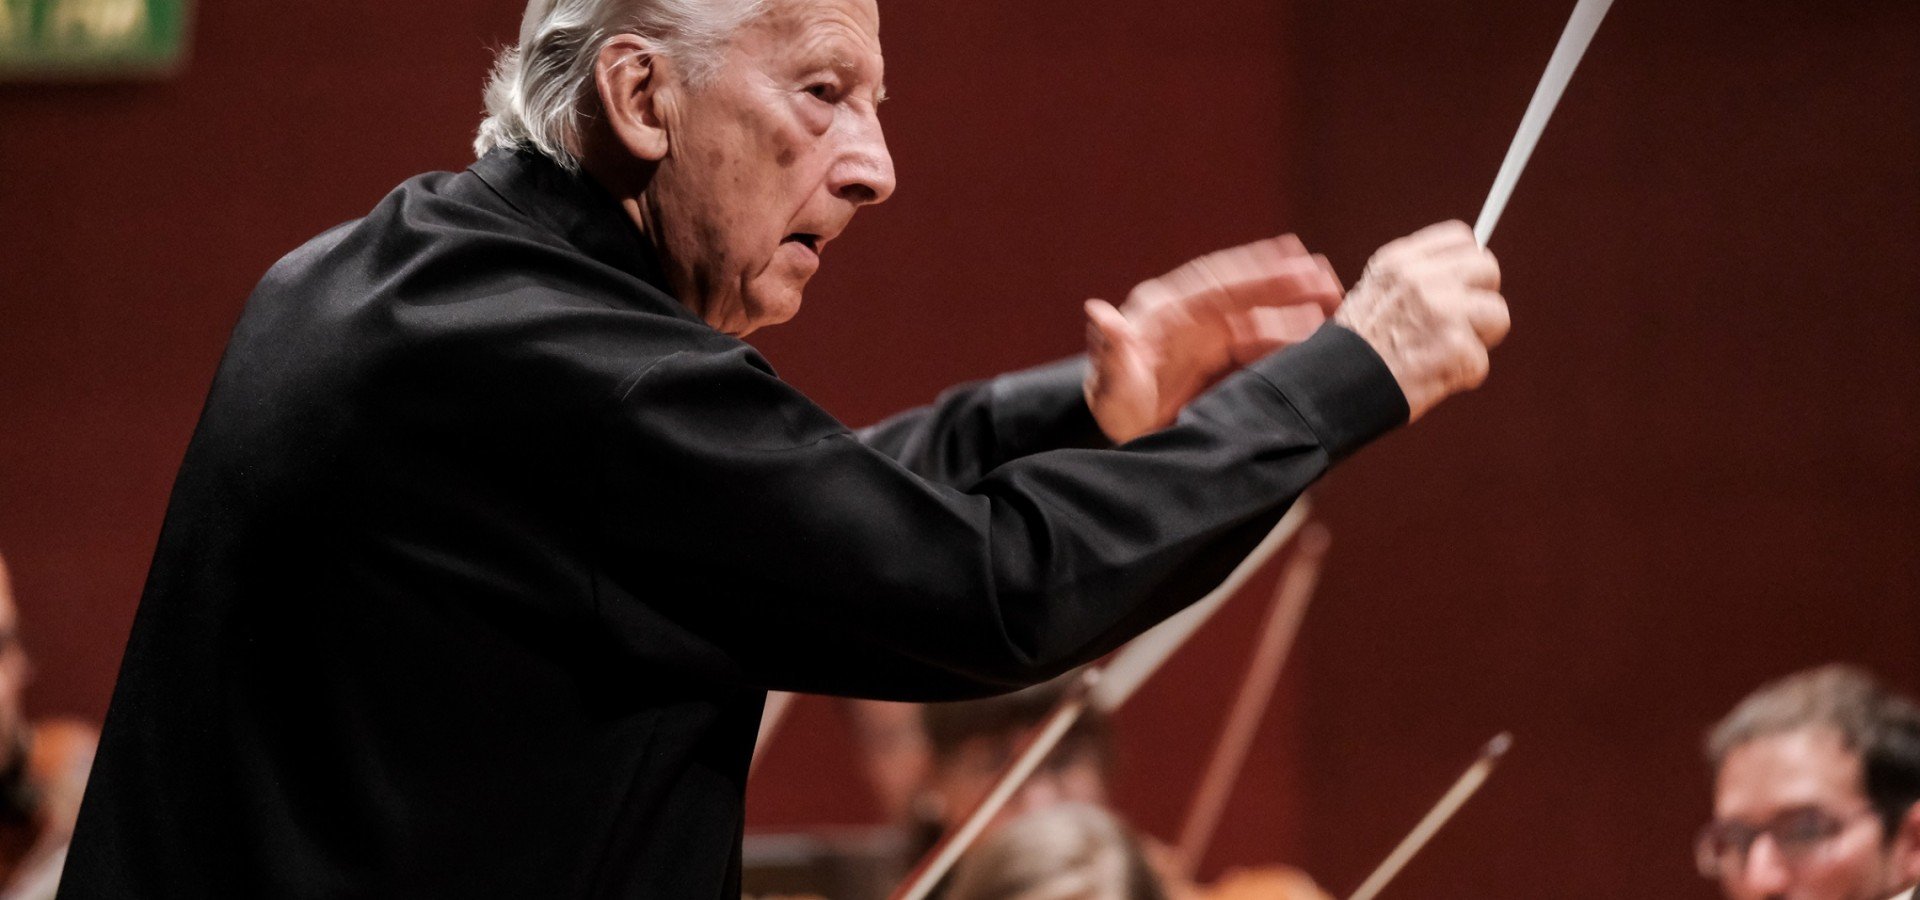 Günther Herbig dirige la Sinfonía nº 6 de Bruckner a la Orquesta Filarmónica de Gran Canaria